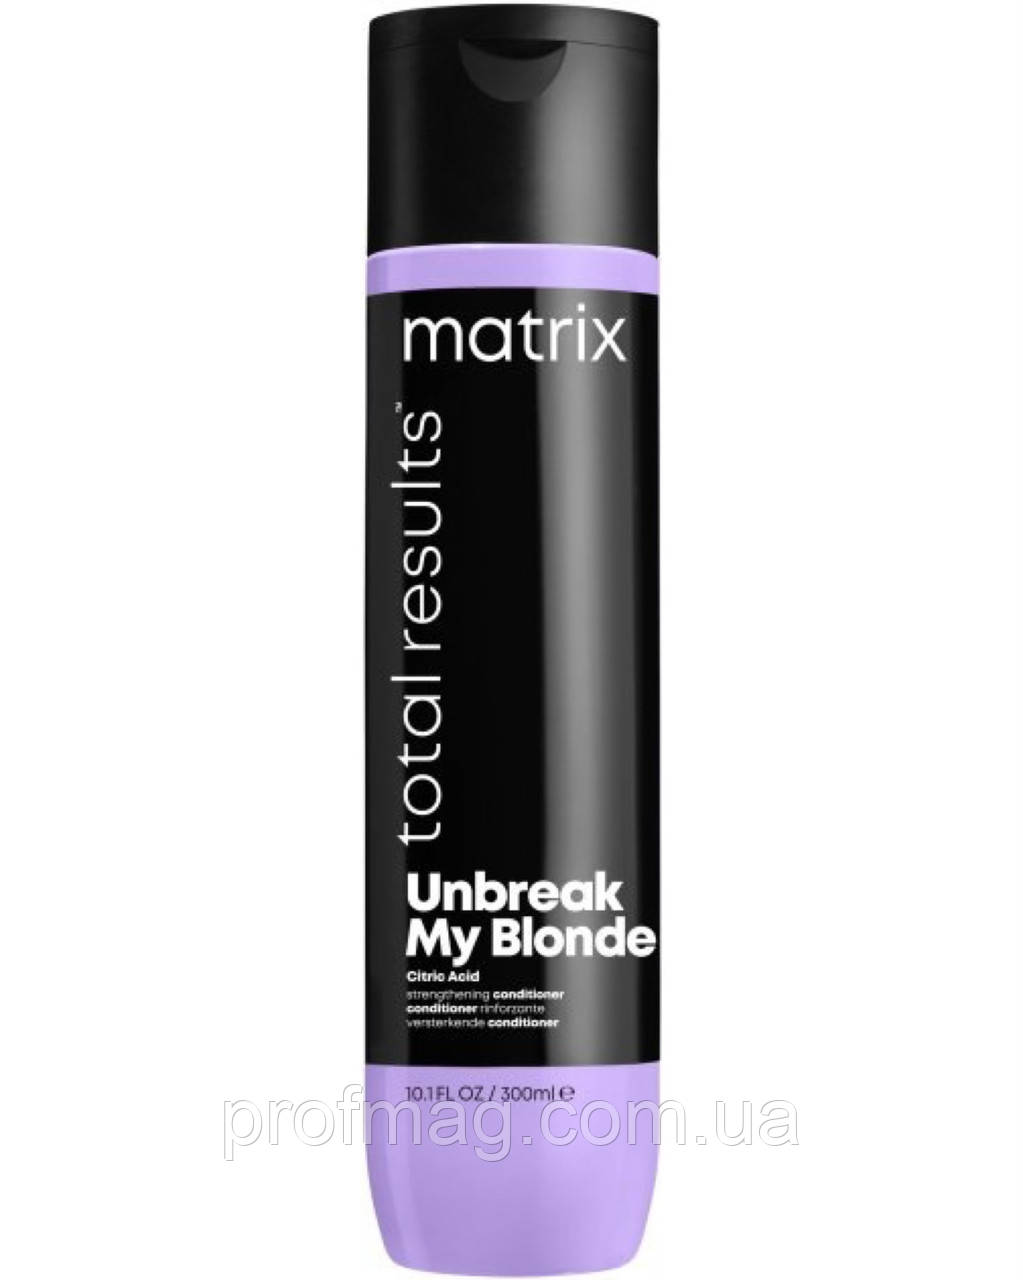 Matrix Unbreak My Blonde поживний кондиціонер для освітленого волосся, Кондиціонер для зміцнення волосся 300мл